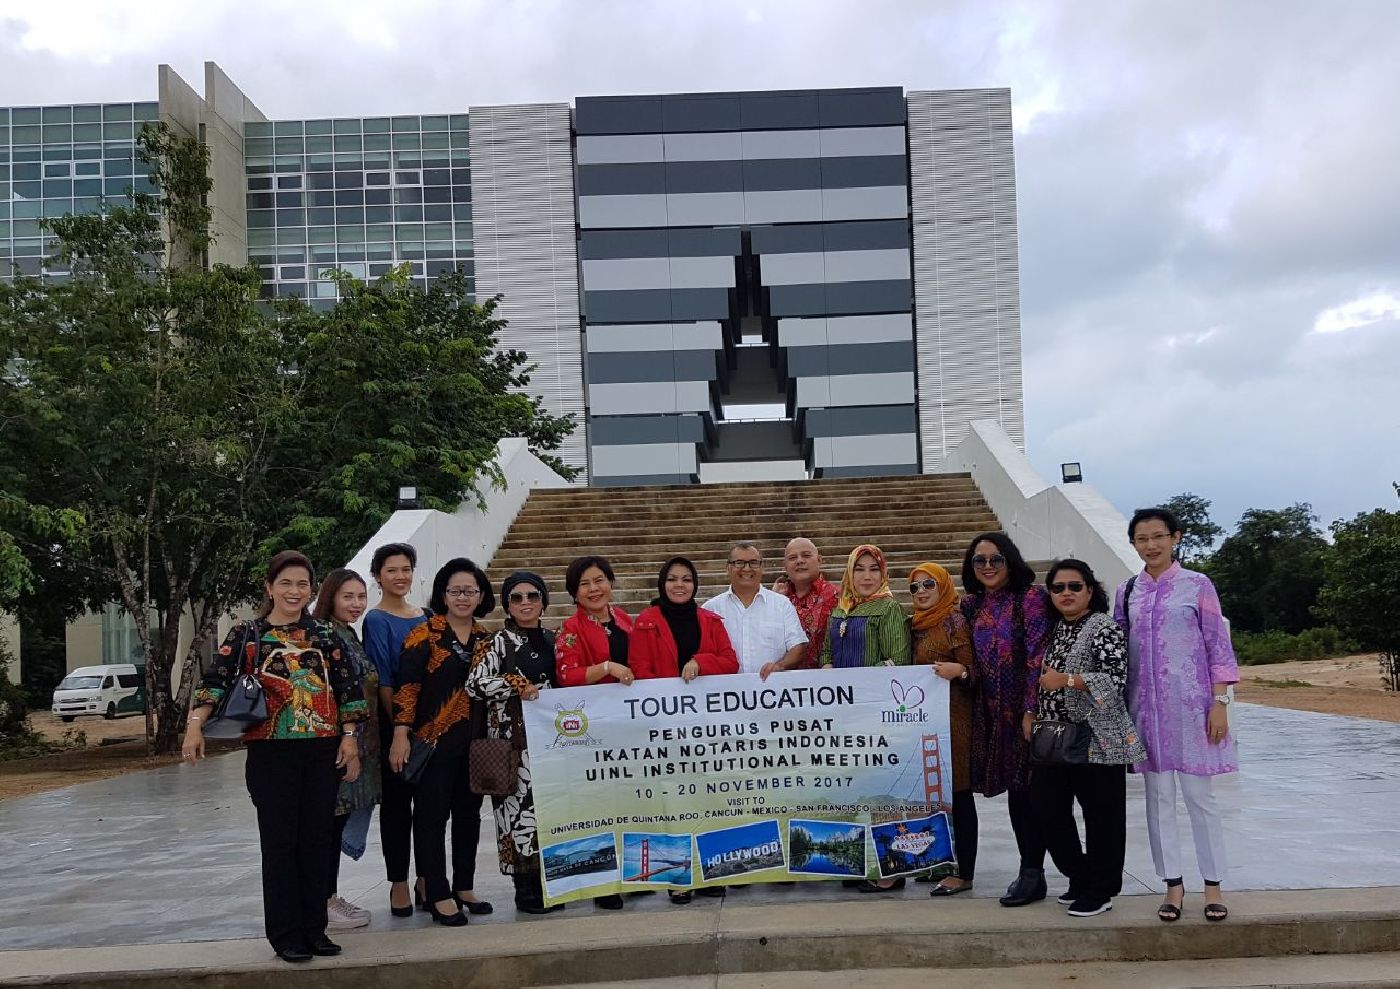 Notarios de Indonesia visitan la Universidad de Quintana Roo Unidad Académica Cancún